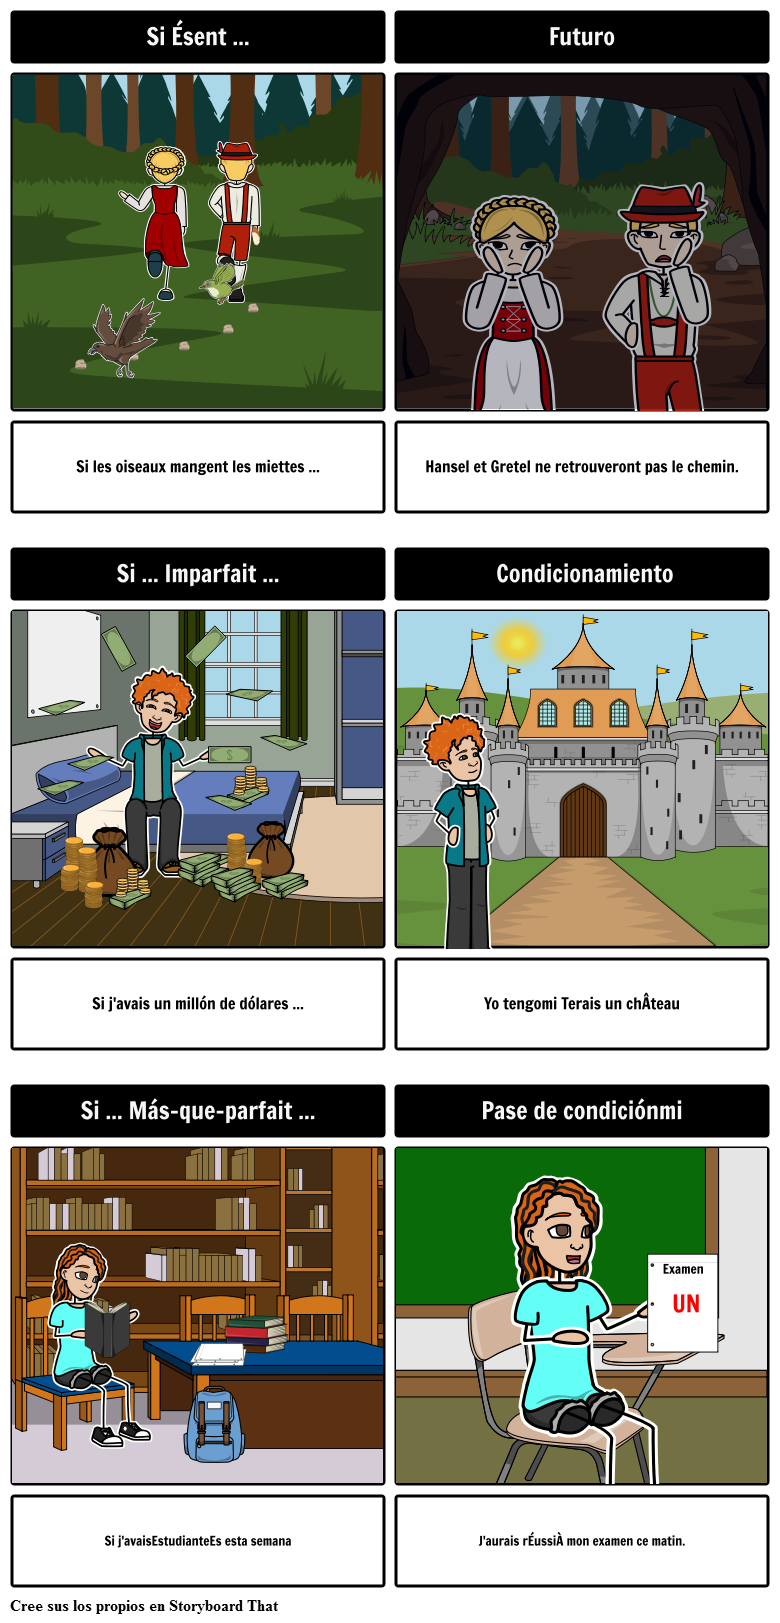 Construcciones "Si" en francés